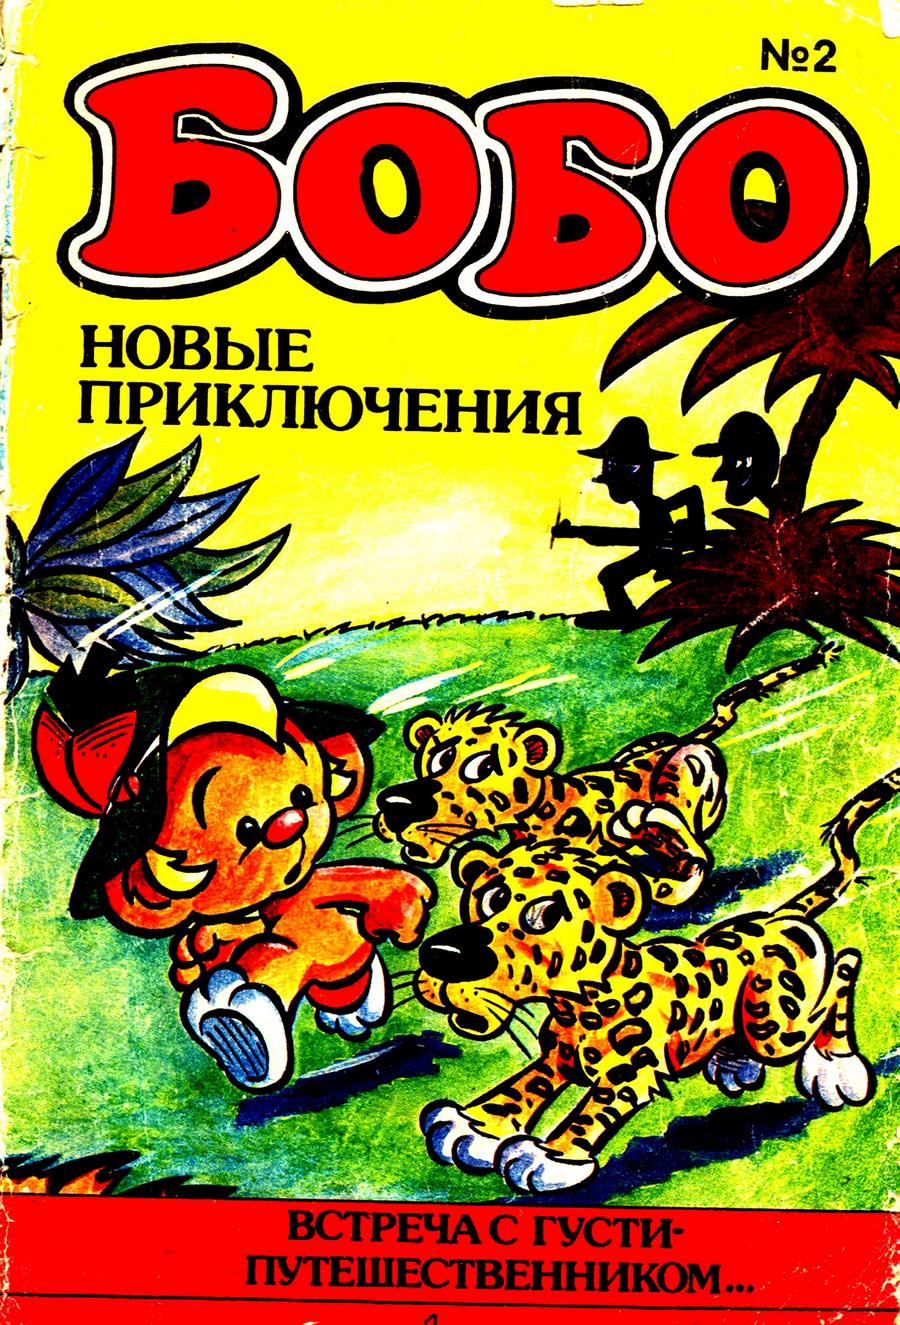 Комикс Бобо #2-1992